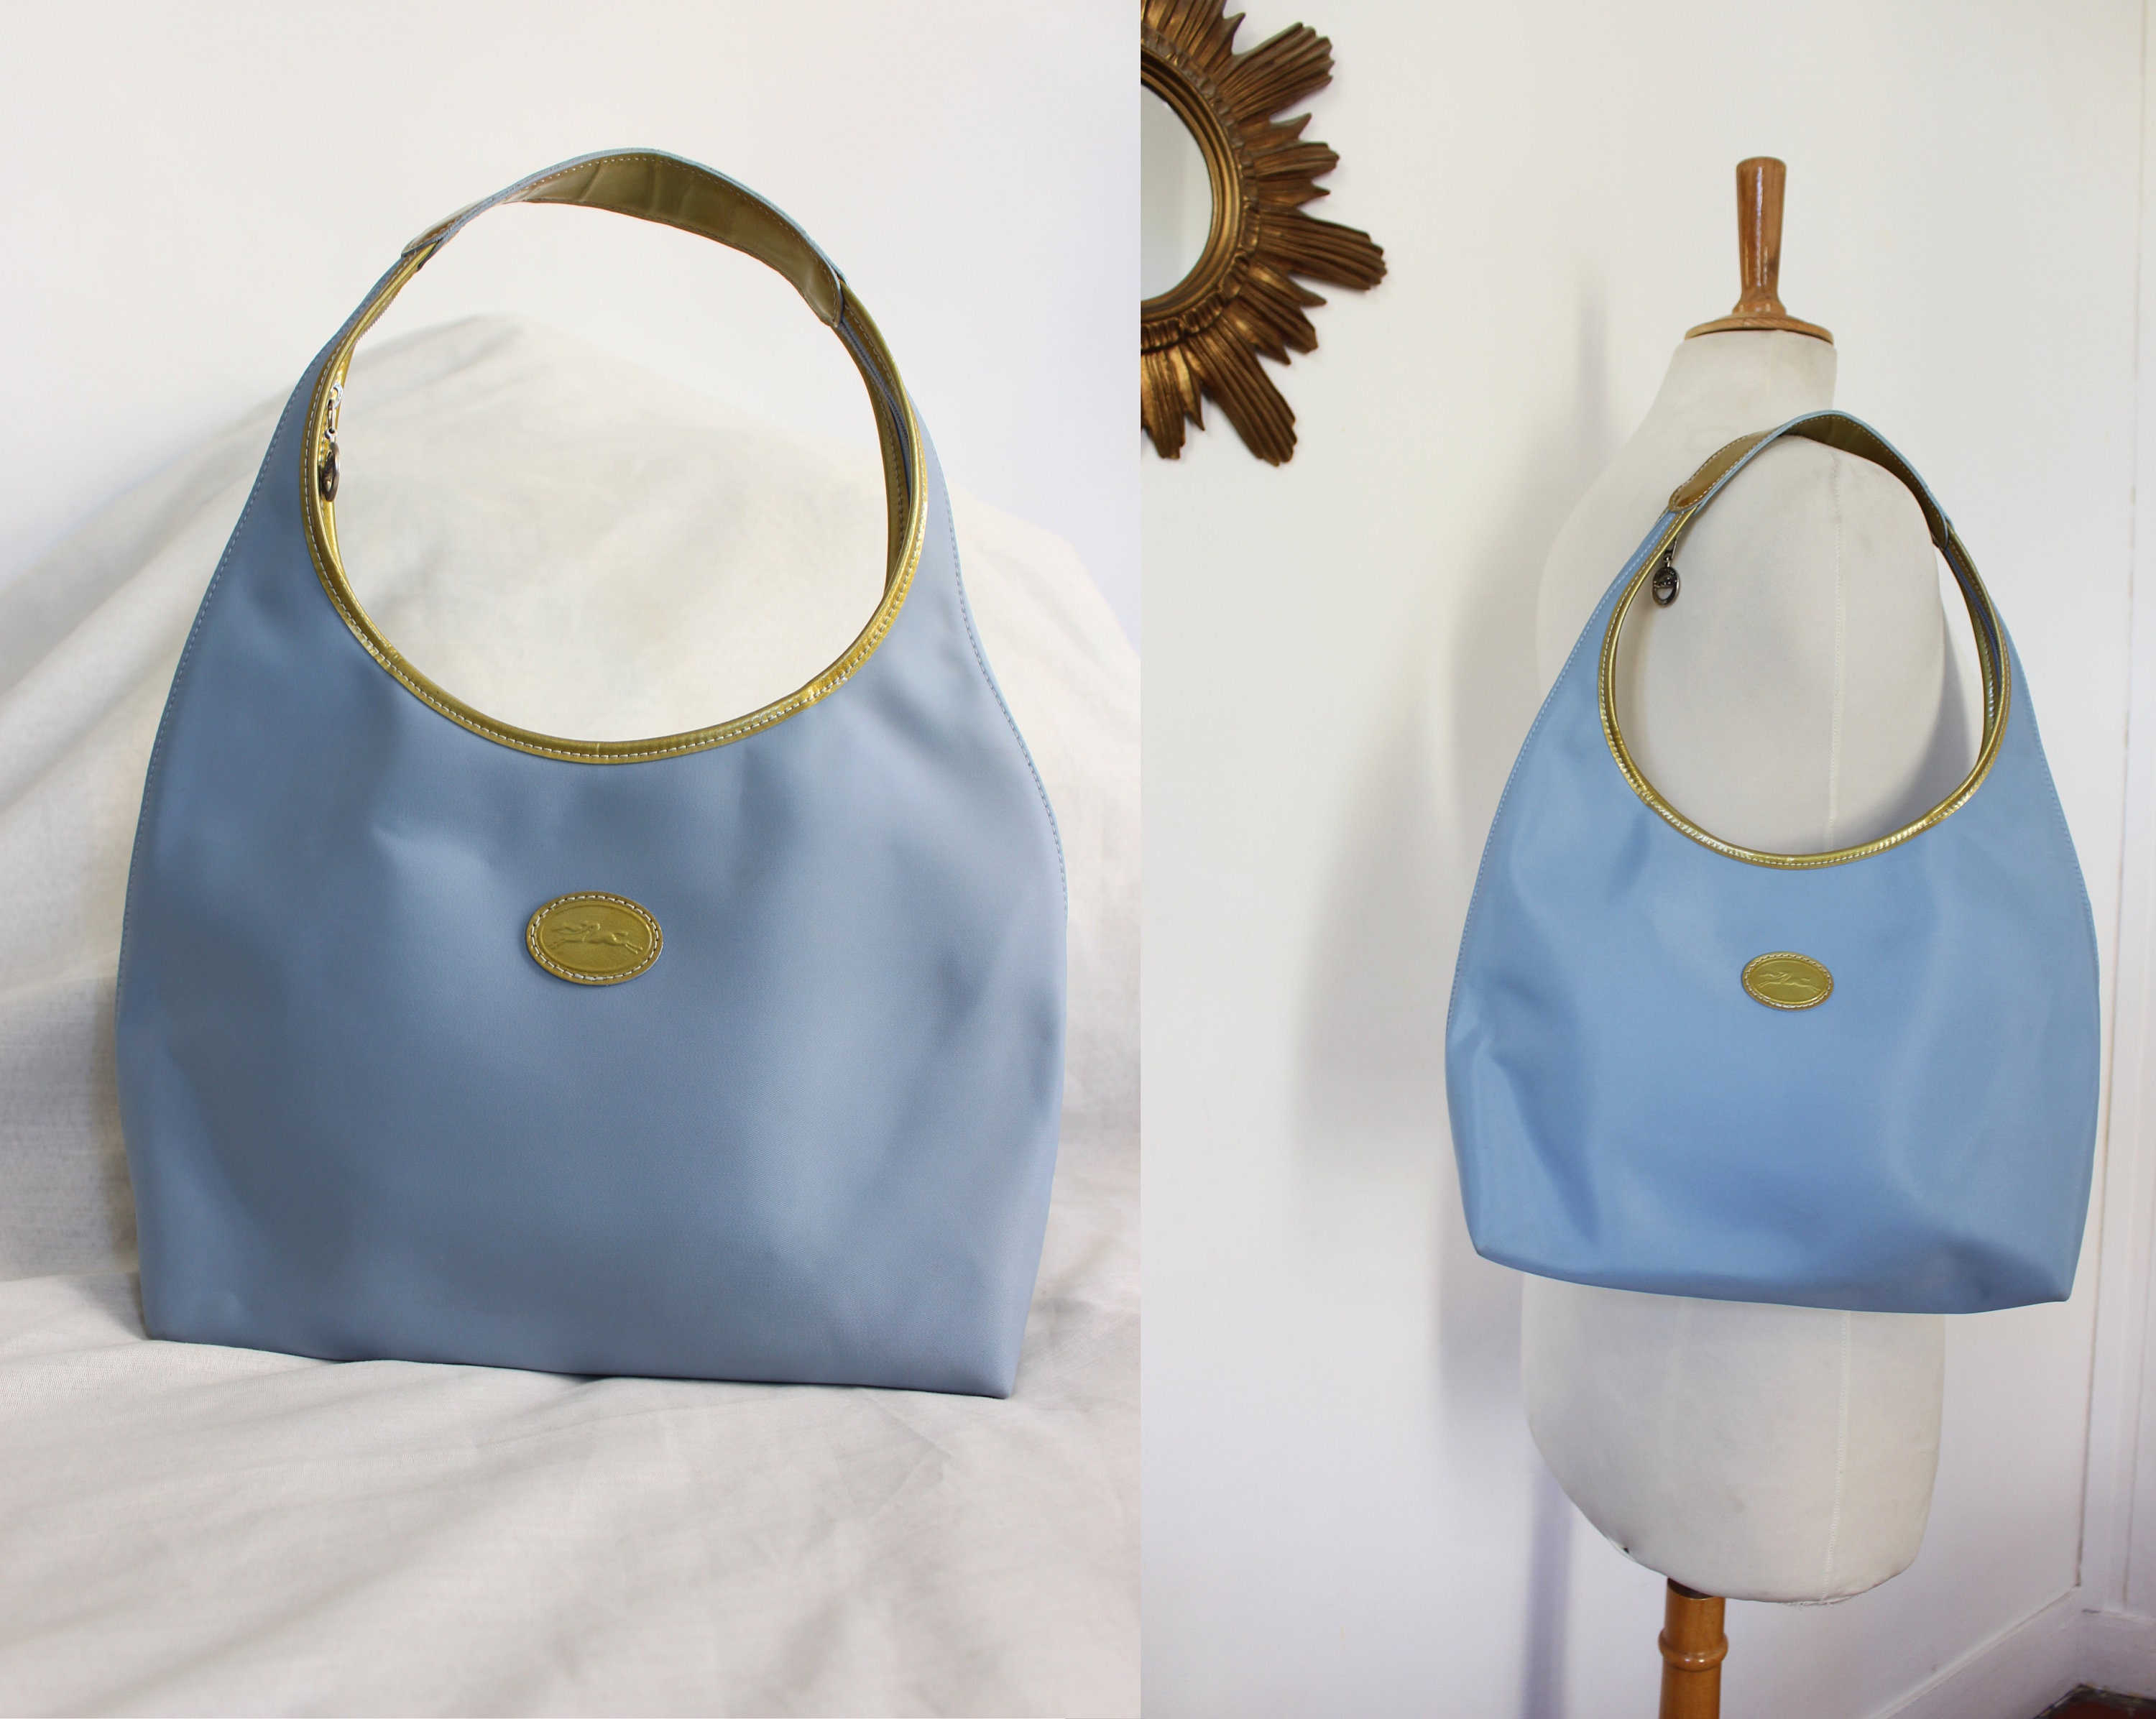 LONGCHAMP 1948 Vintage Hobo Baguette Handbag in Light Blue 